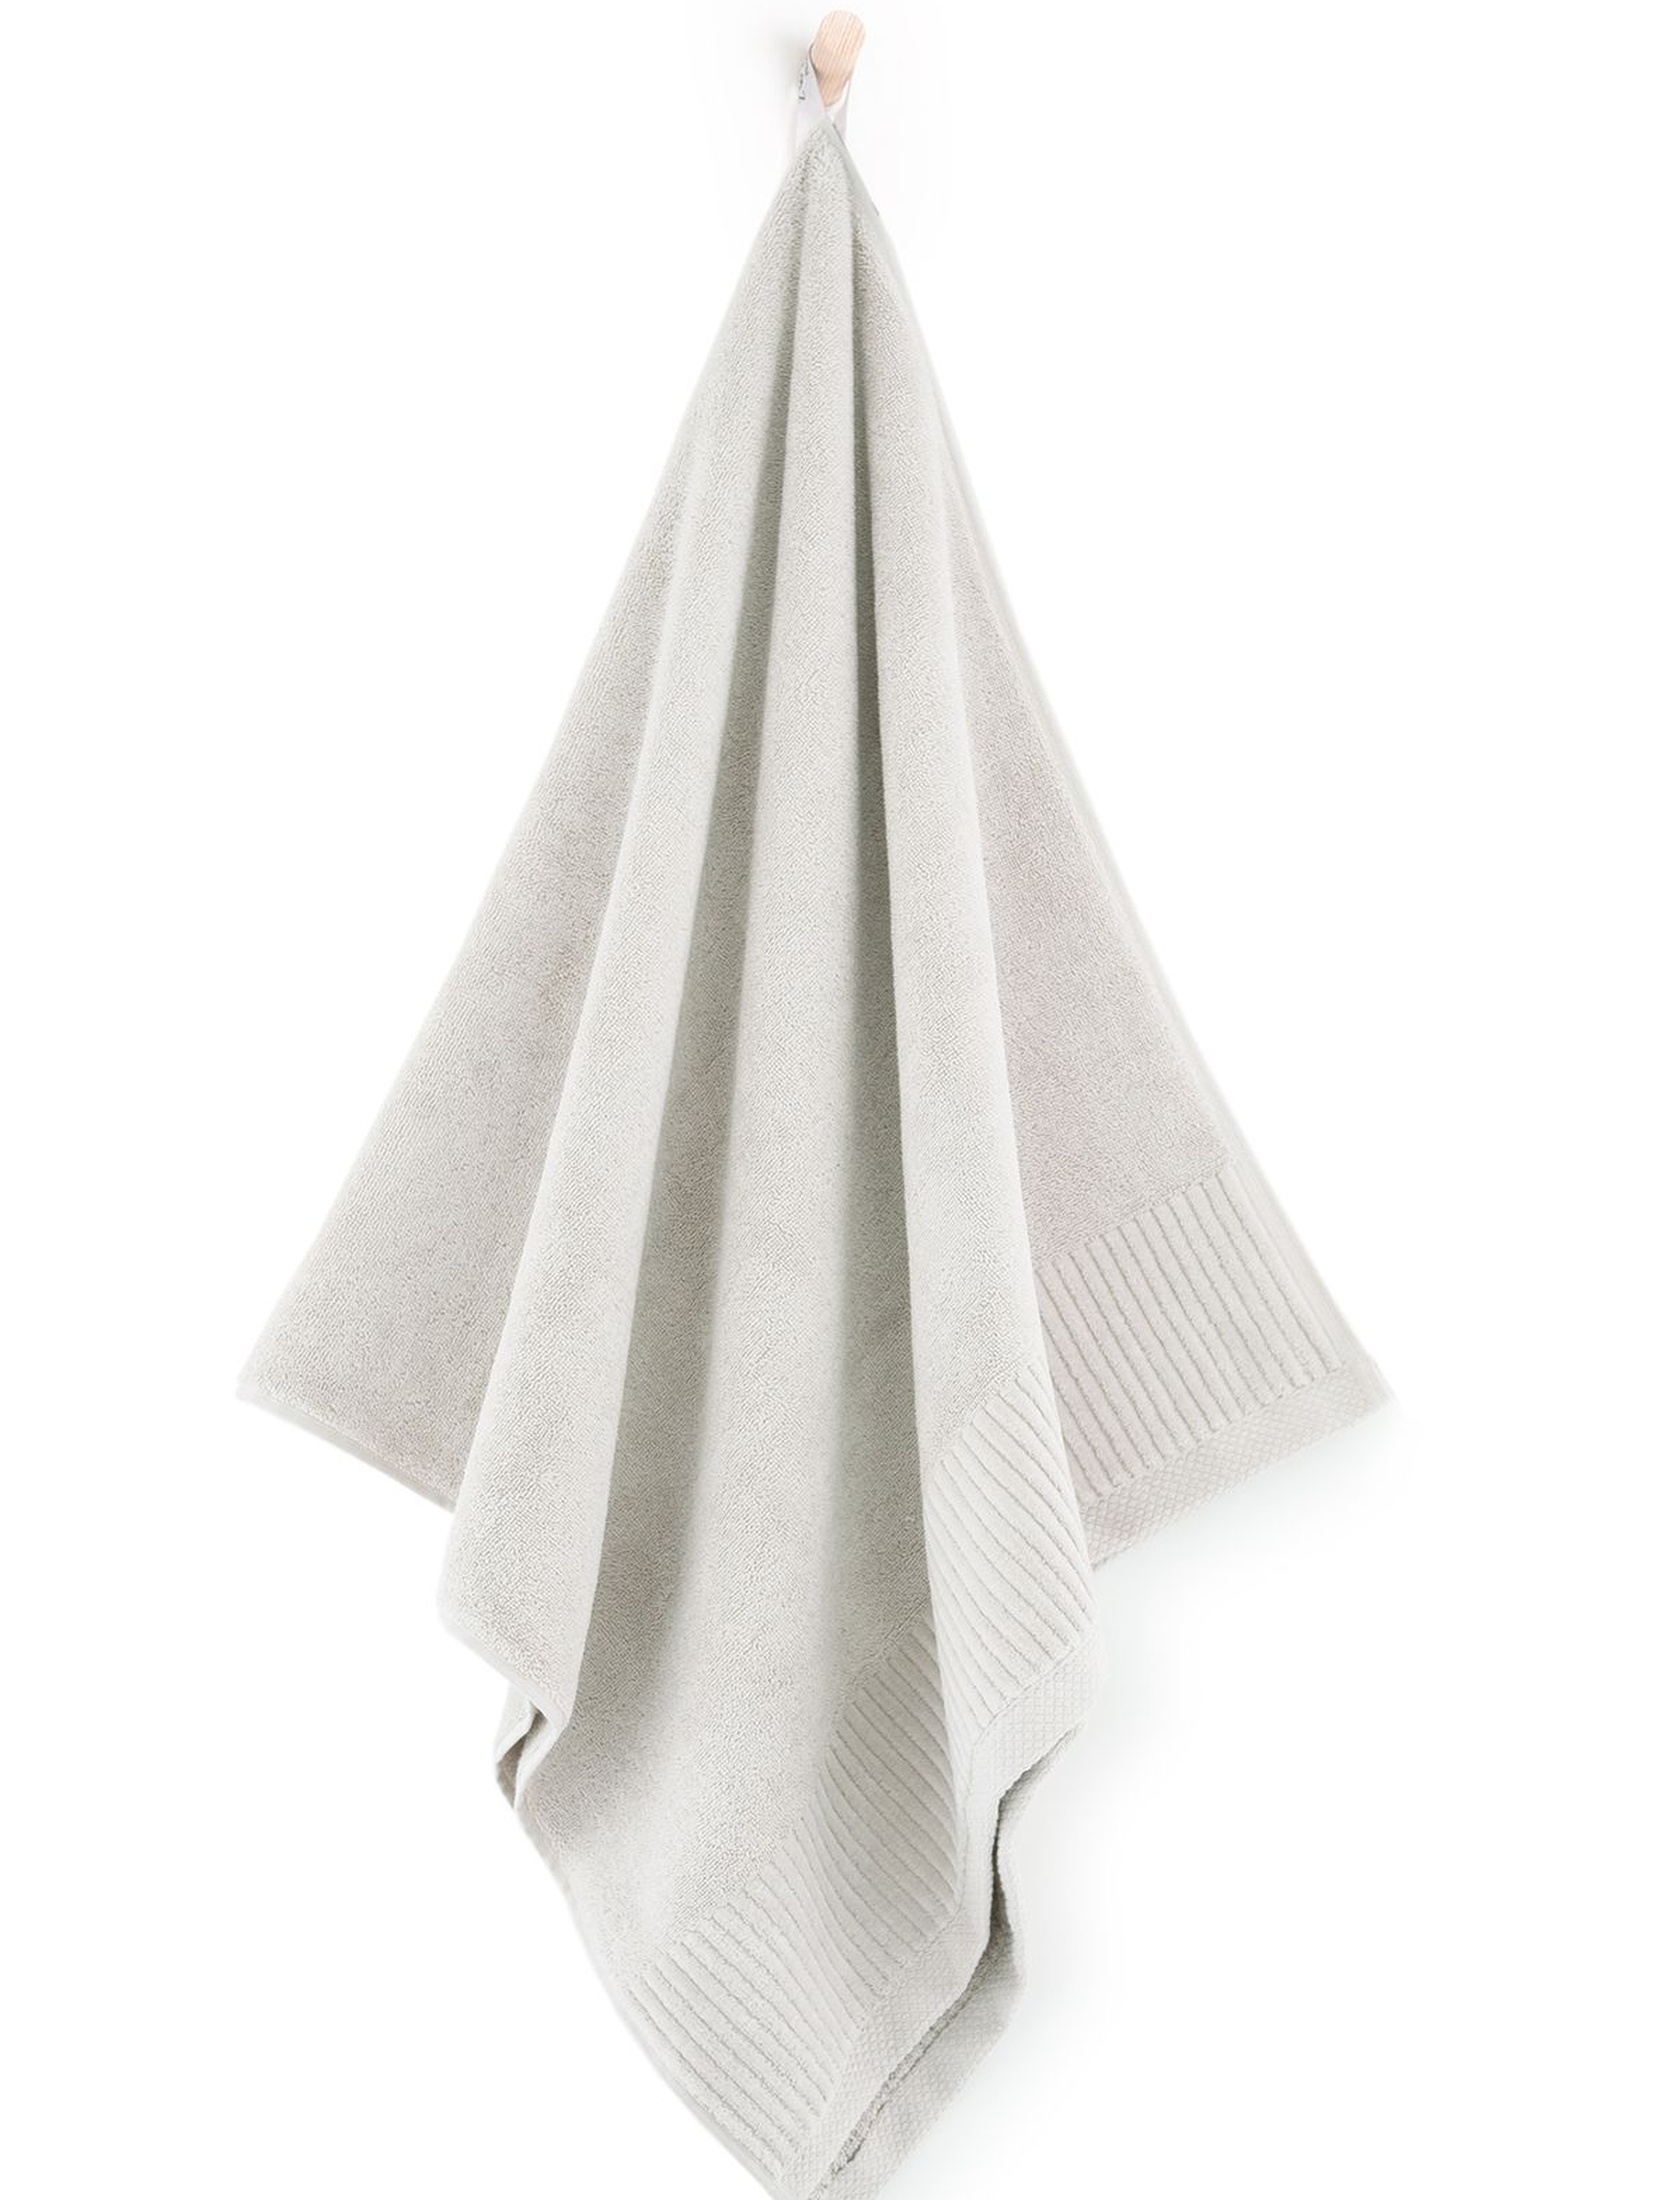 Ręcznik z bawełny egipskiej Lisbona 70x140cm